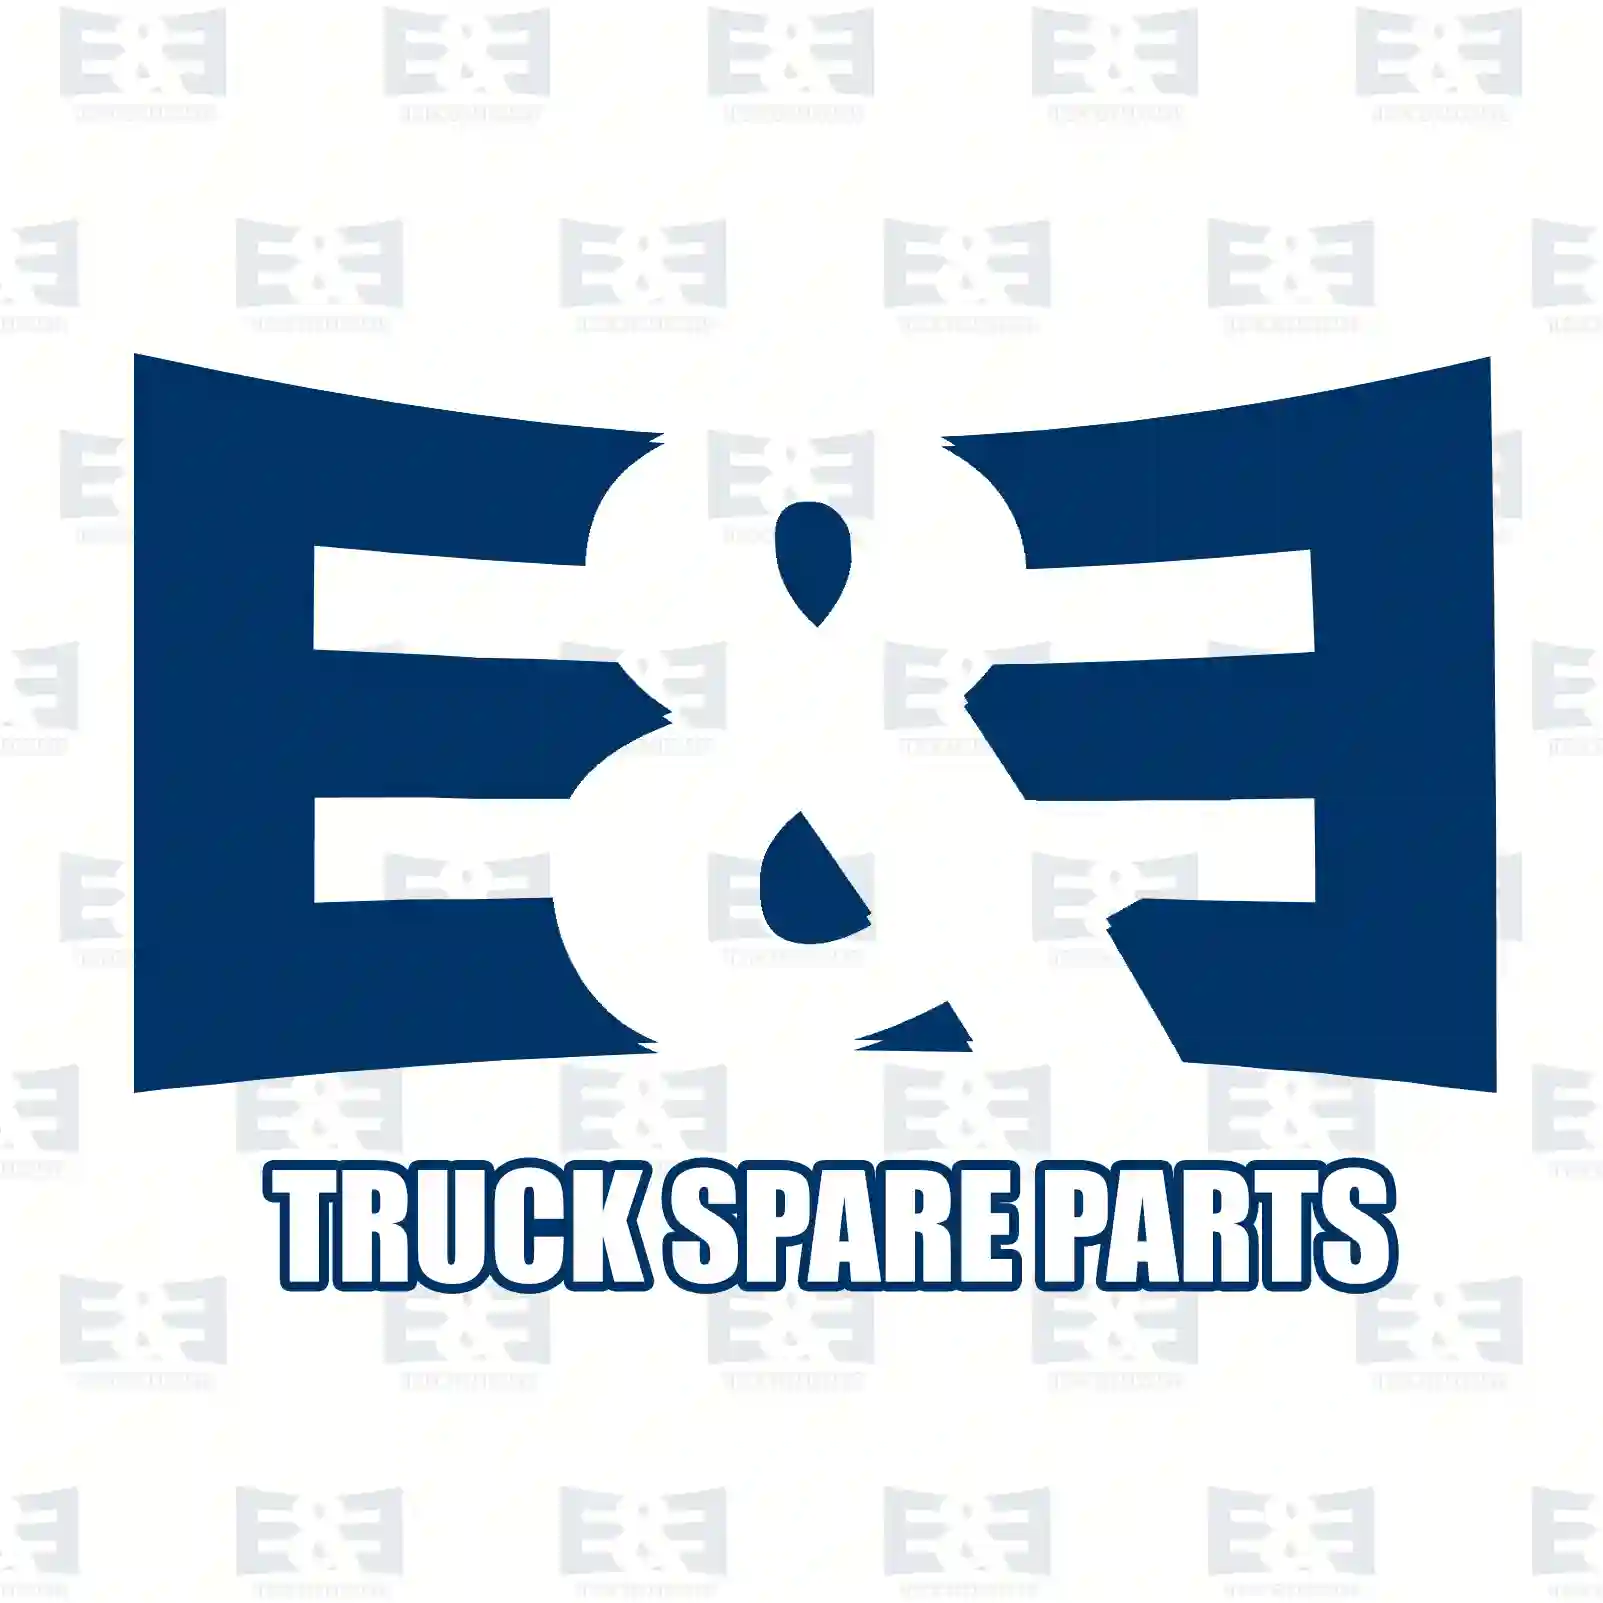 Marker lamp, 2E2297080, 504097923, 504097924, ZG20645-0008 ||  2E2297080 E&E Truck Spare Parts | Truck Spare Parts, Auotomotive Spare Parts Marker lamp, 2E2297080, 504097923, 504097924, ZG20645-0008 ||  2E2297080 E&E Truck Spare Parts | Truck Spare Parts, Auotomotive Spare Parts